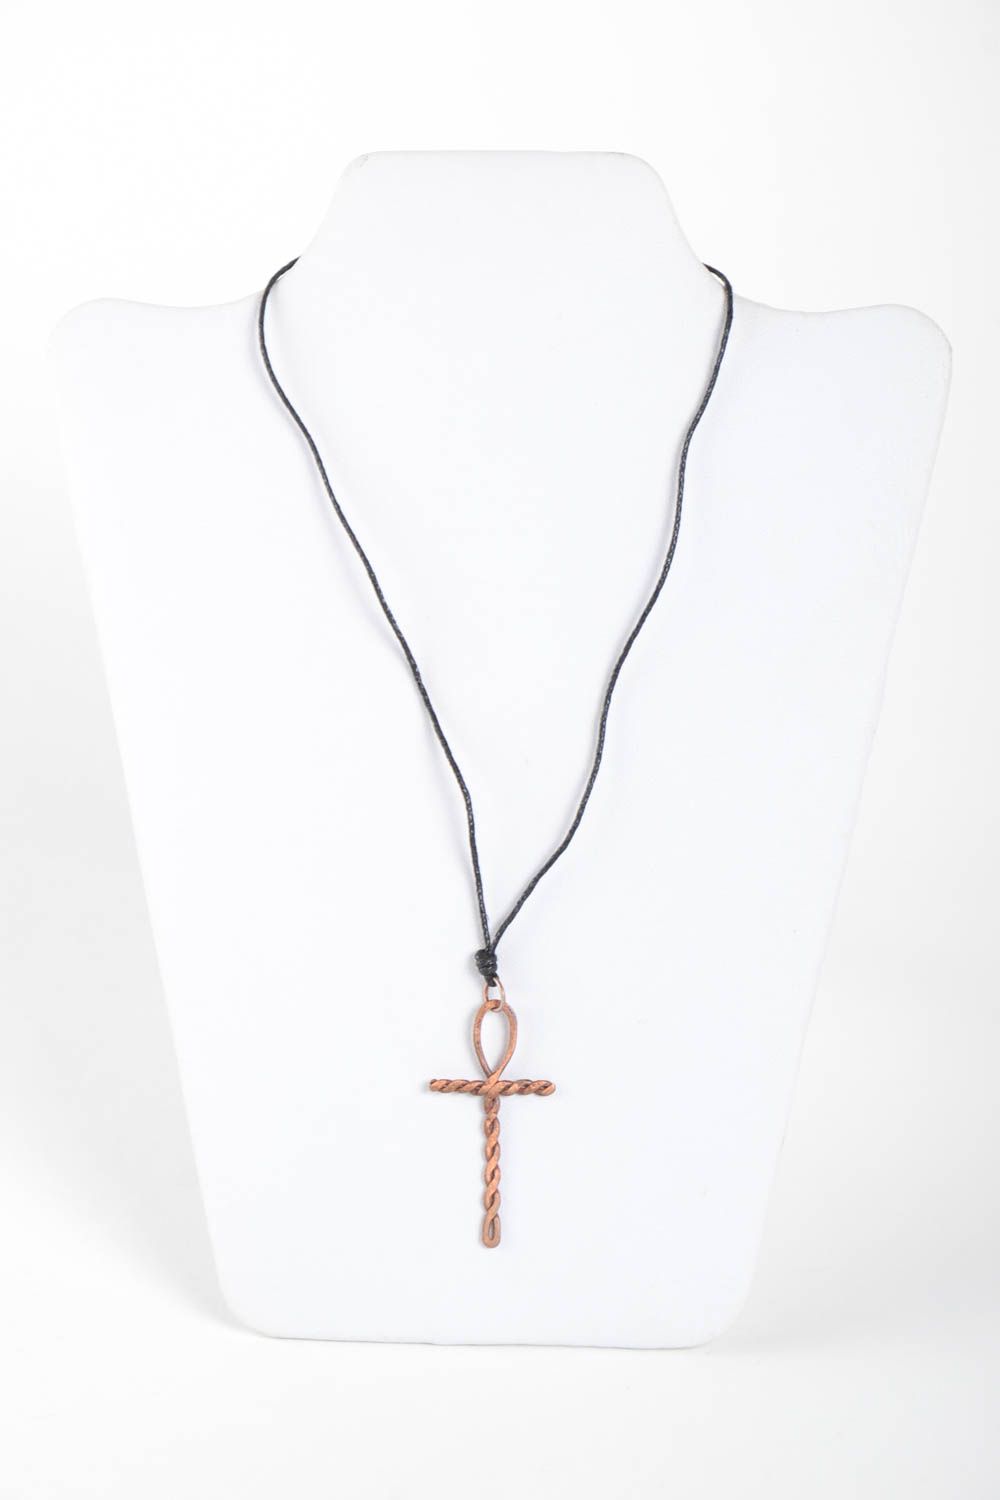 Metal jewelry handmade copper pendant wire wrap pendant elegant jewelry photo 2